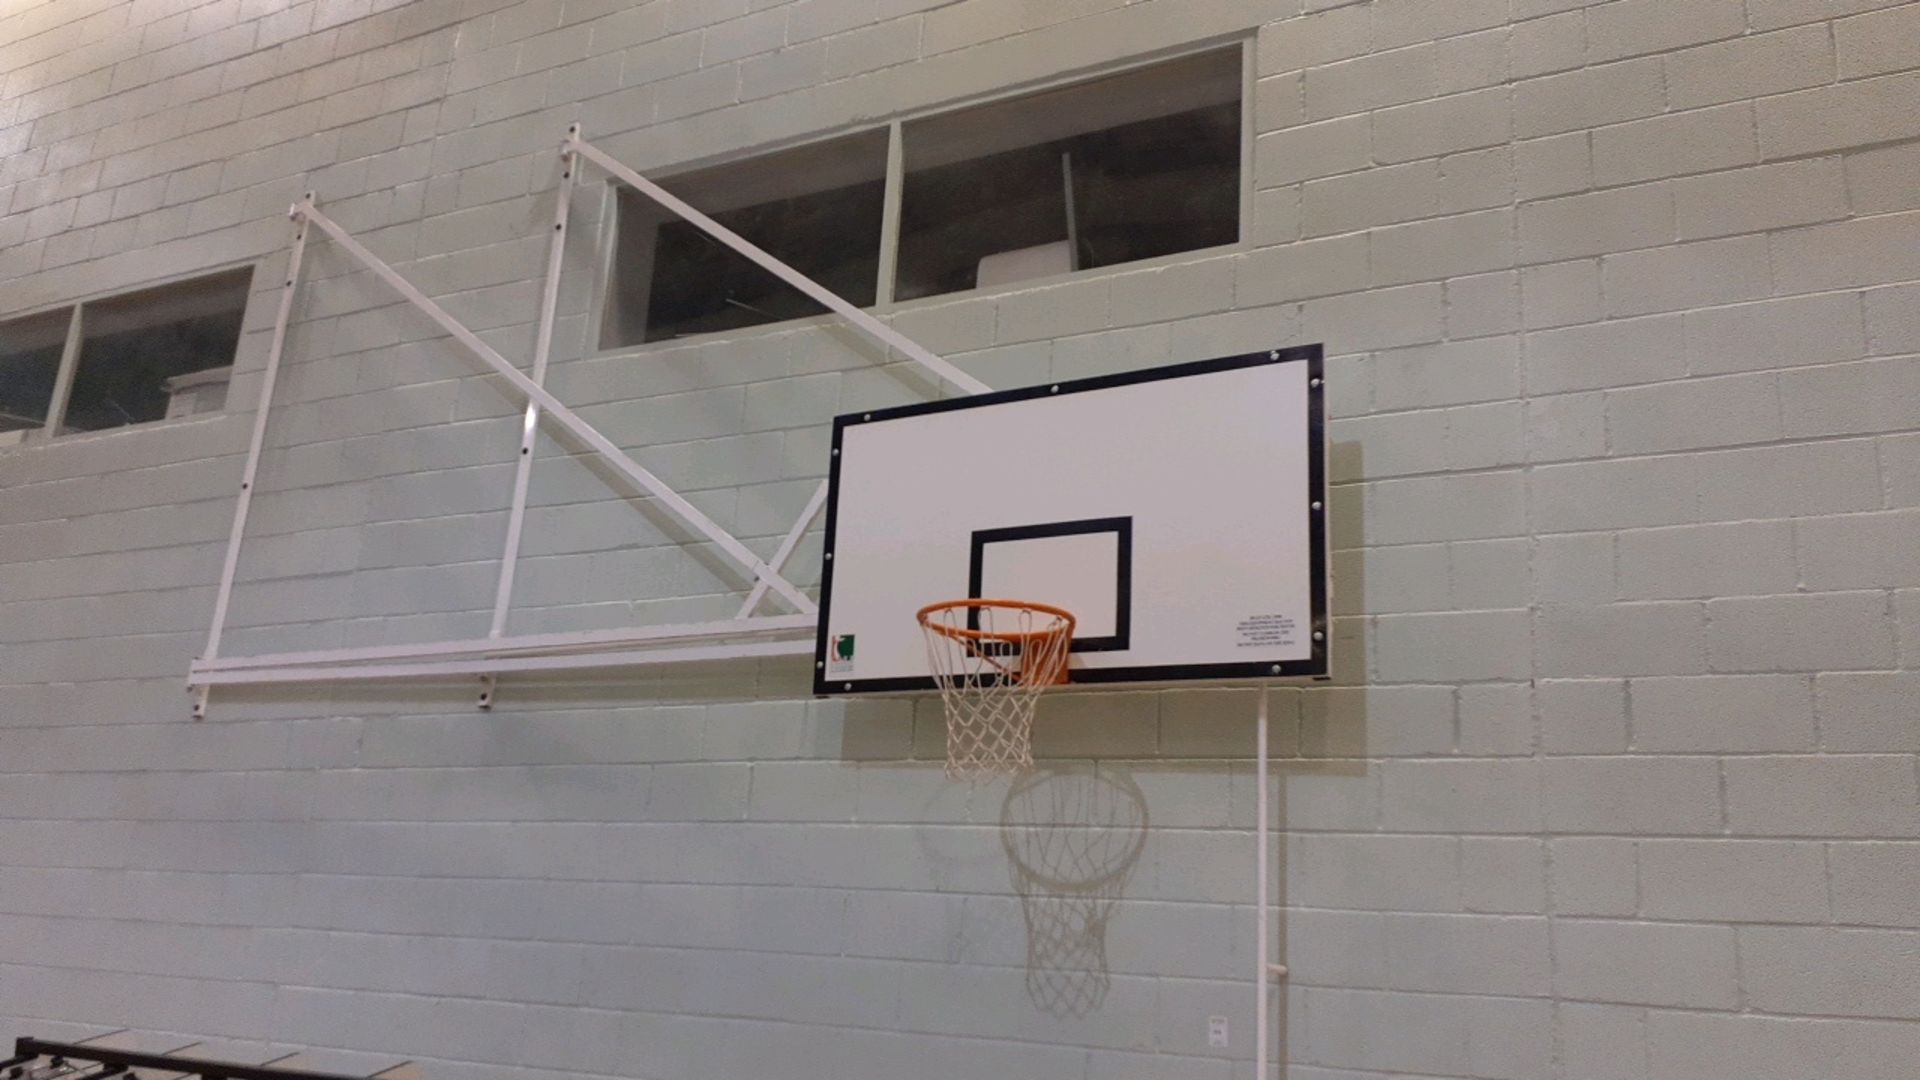 Basketball hoops